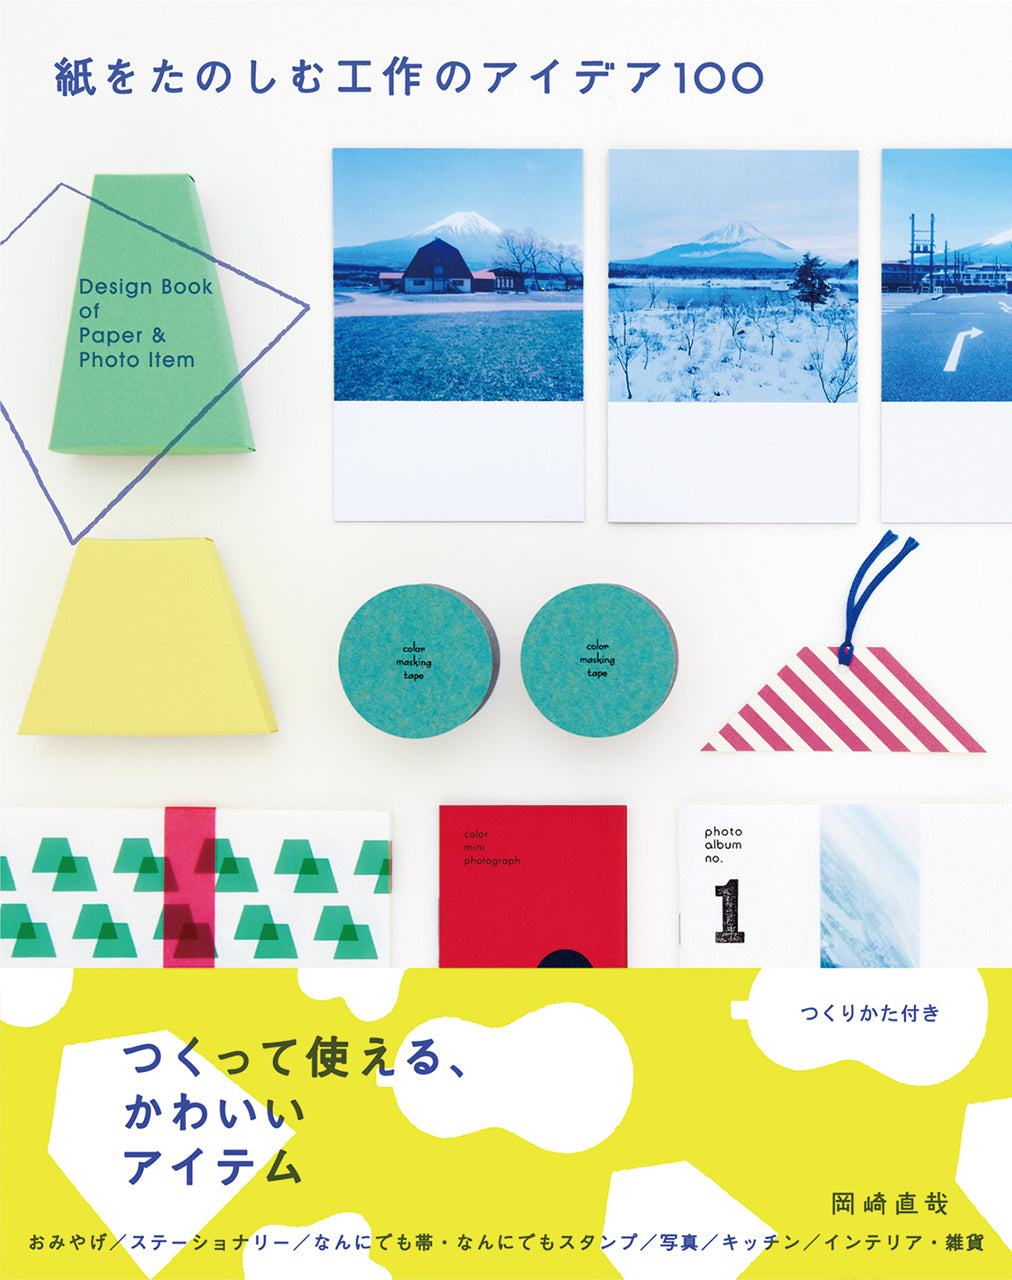 紙をたのしむ工作のアイデア100 100 Design Book of Paper & Photo